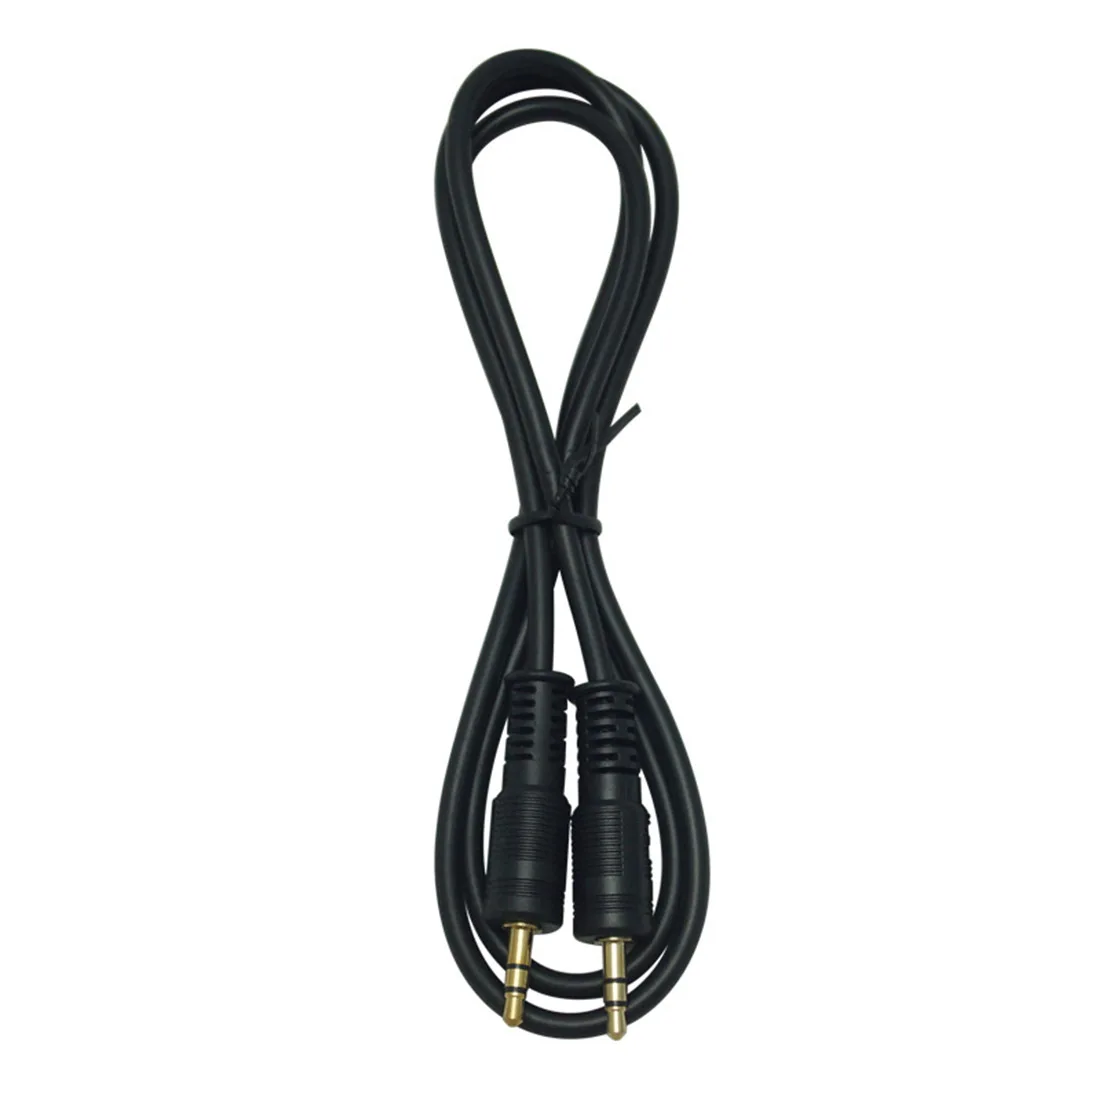 Провод удлинительного кабеля 1 метр длинного штекерного соединителя 5,5*2,1 5,5*2,1 Штекерный провод с вилкой Черный